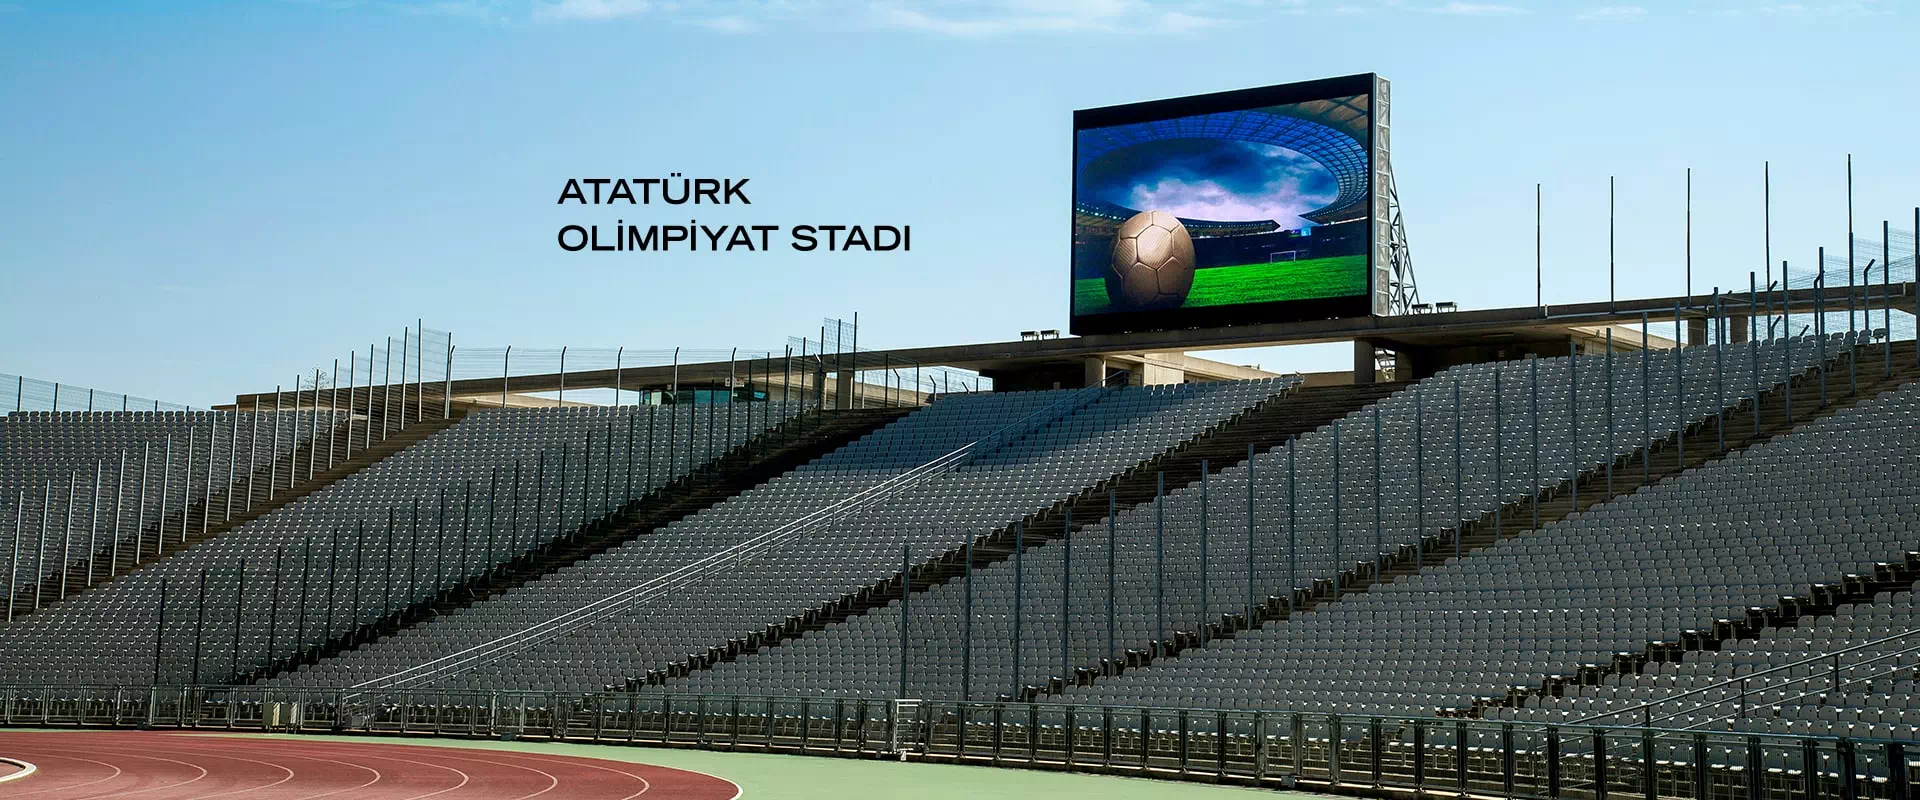 Taglig, Atatürk Olimpiyat Stadı